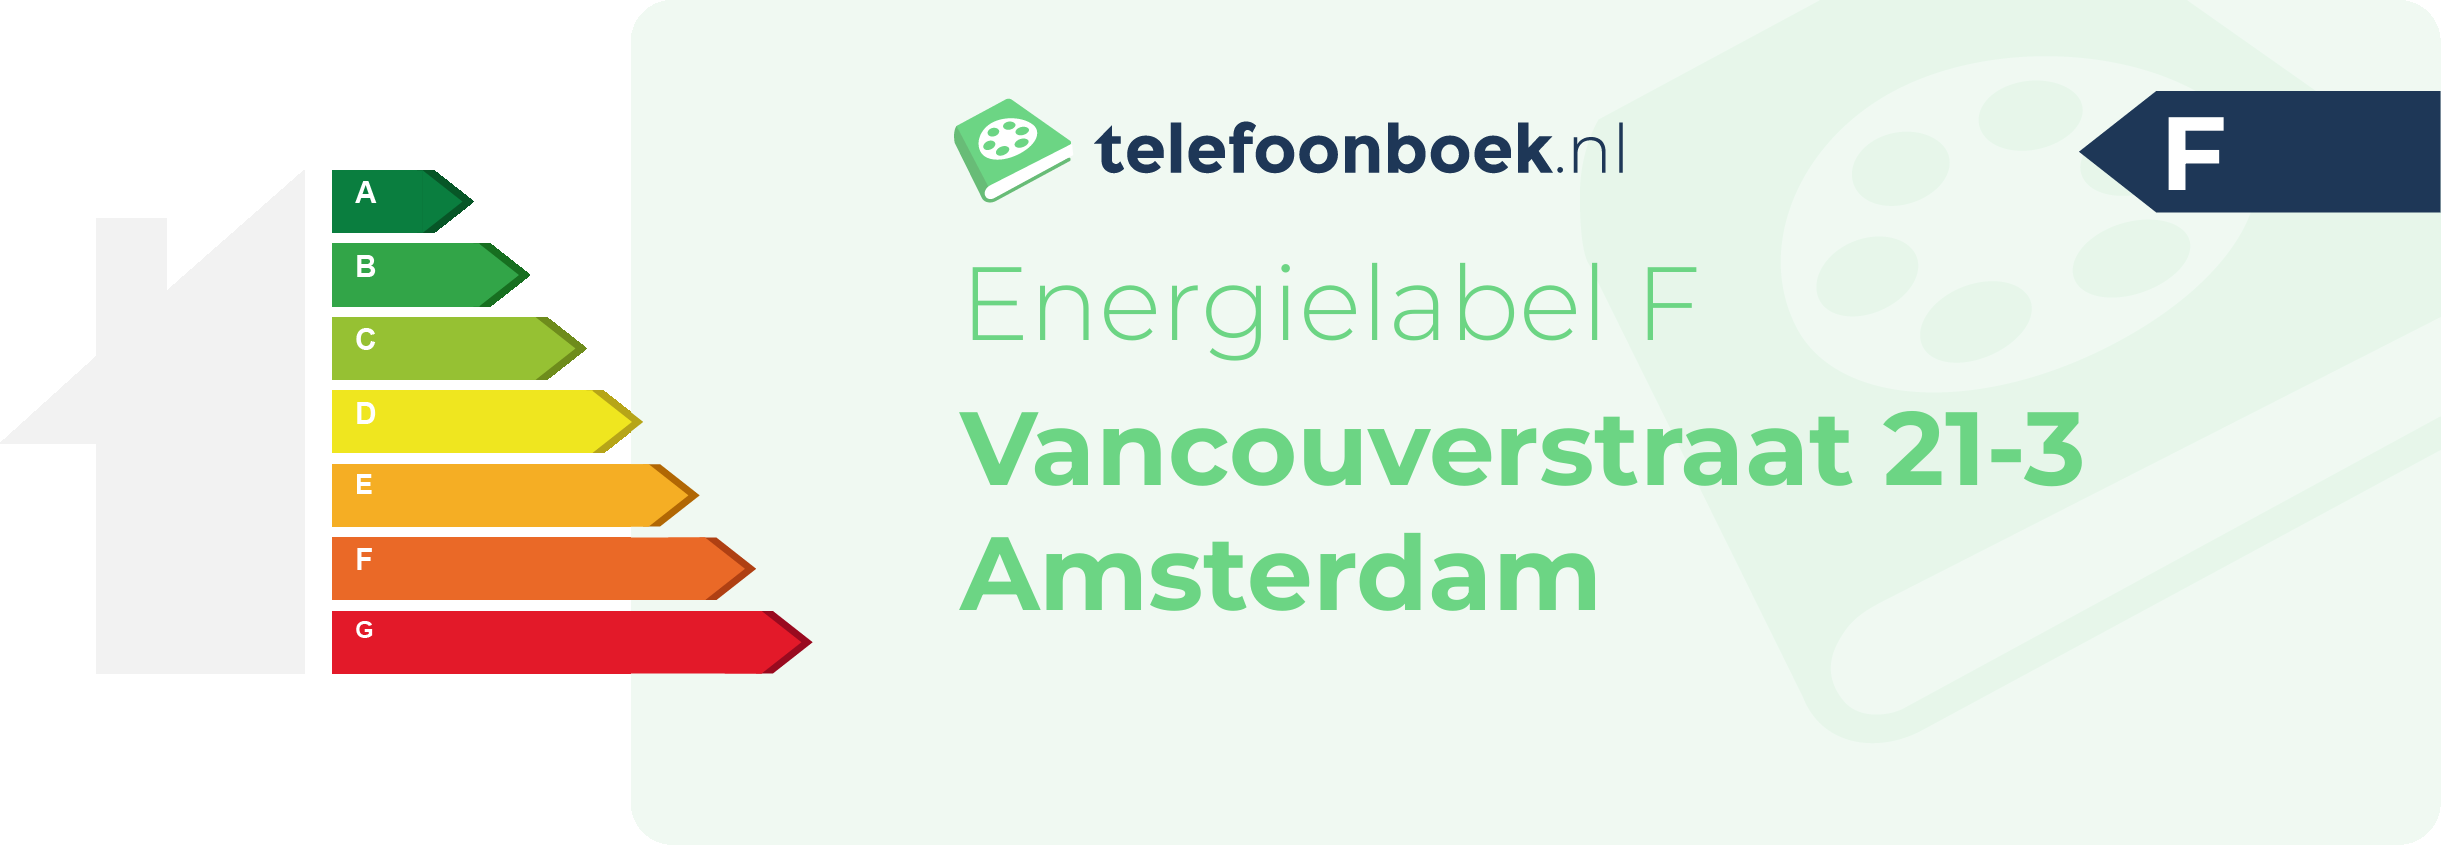 Energielabel Vancouverstraat 21-3 Amsterdam